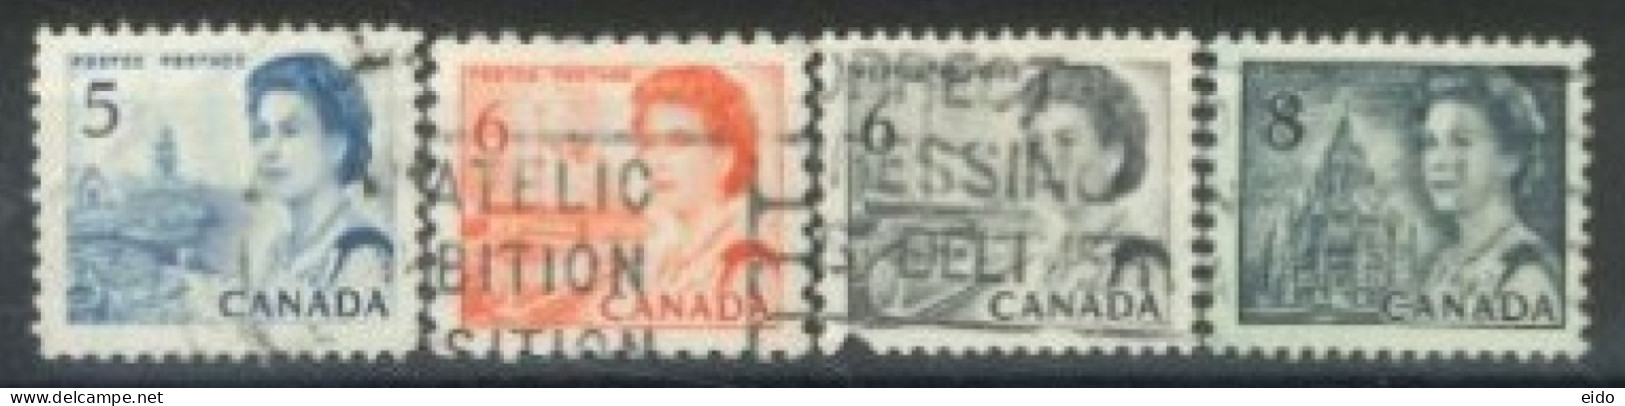 CANADA - 1967, QUEEN ELIZABETH II NORTHERN LIGHTS & DOG TEAM STAMPS SET OF 4, USED. - Oblitérés